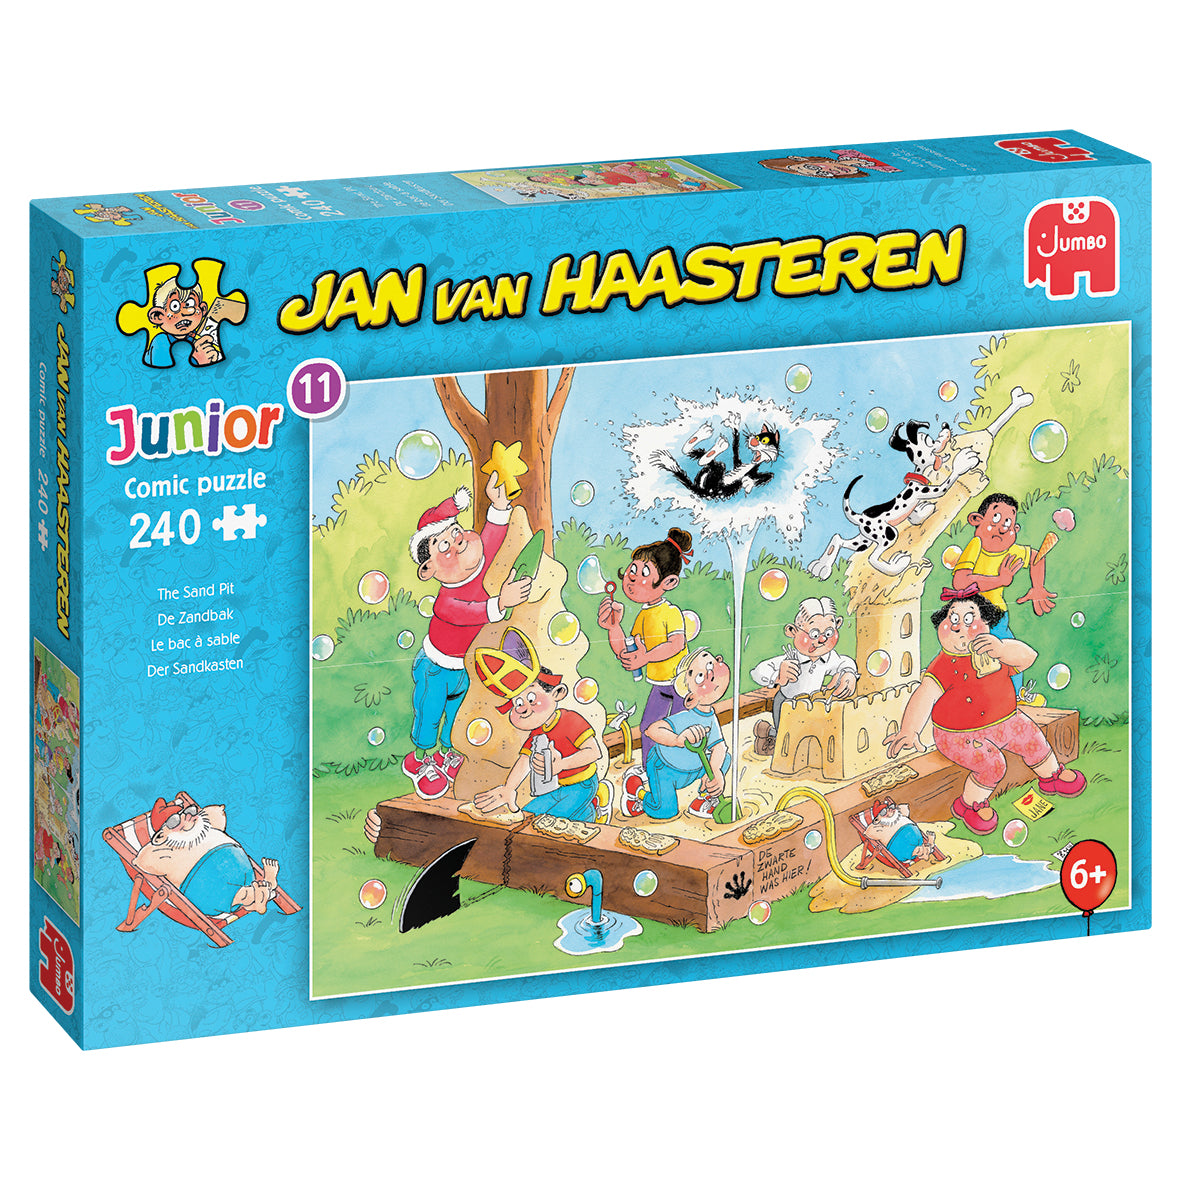 De Zandbak | Jan van Haasteren Junior 11 | 240 stuks